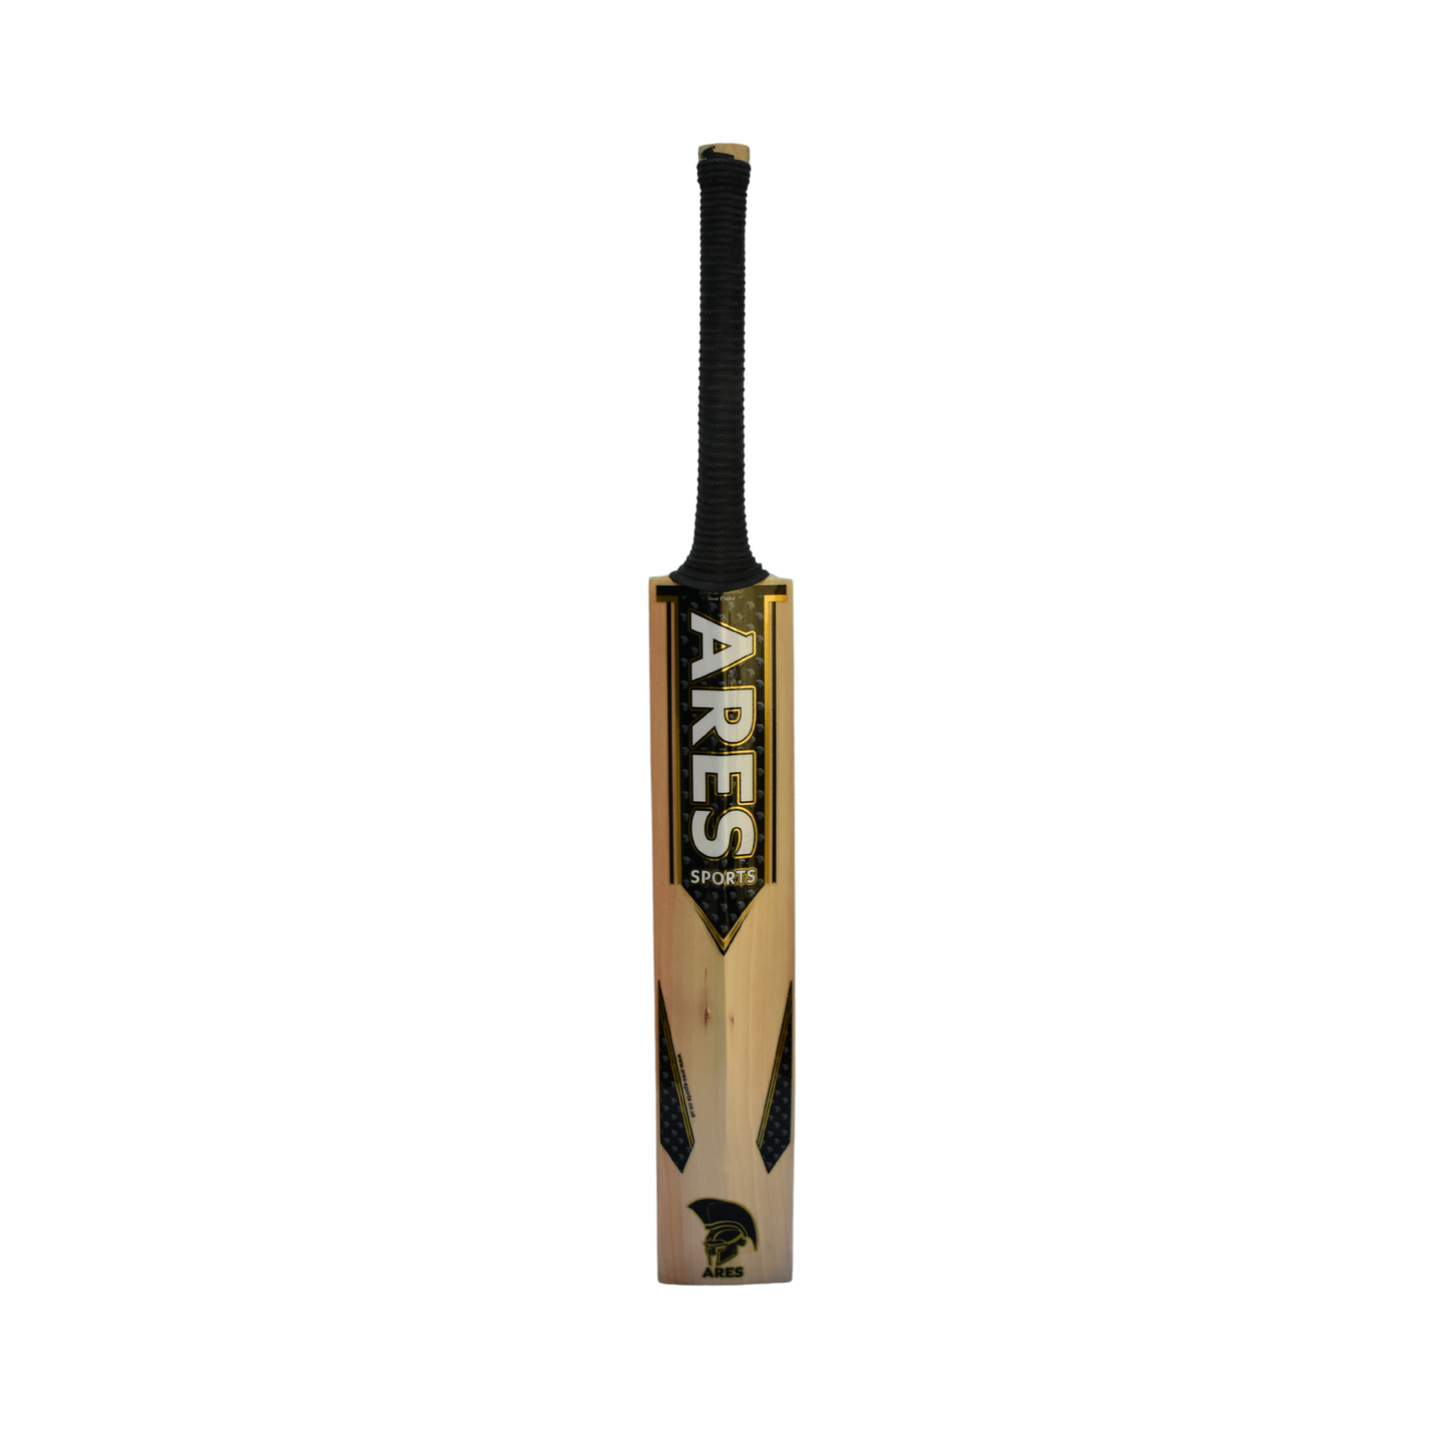 Ares Zeus Edition Cricket Bat - Junior Size Harrow (B)